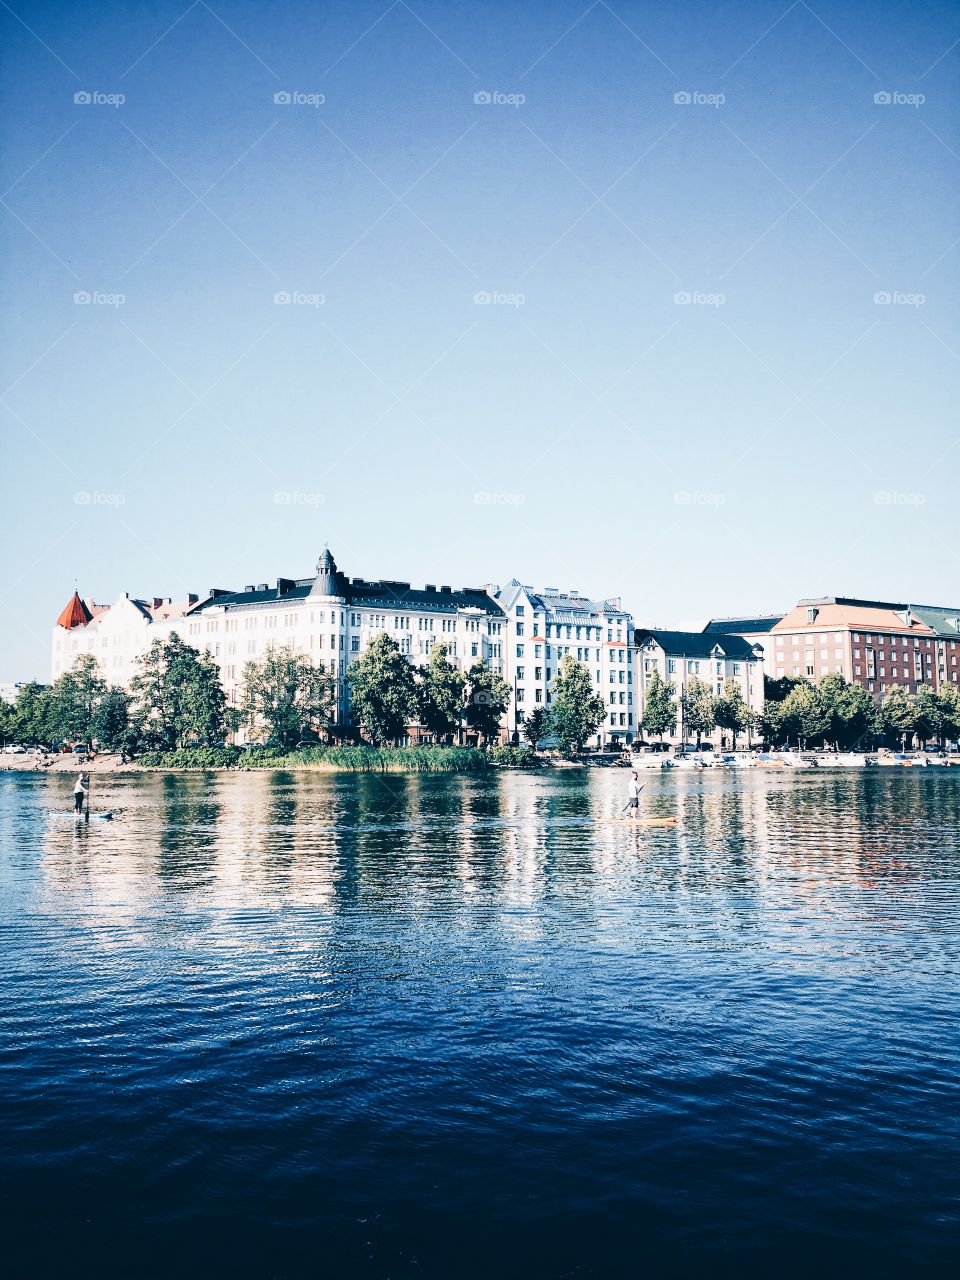 Helsinki
